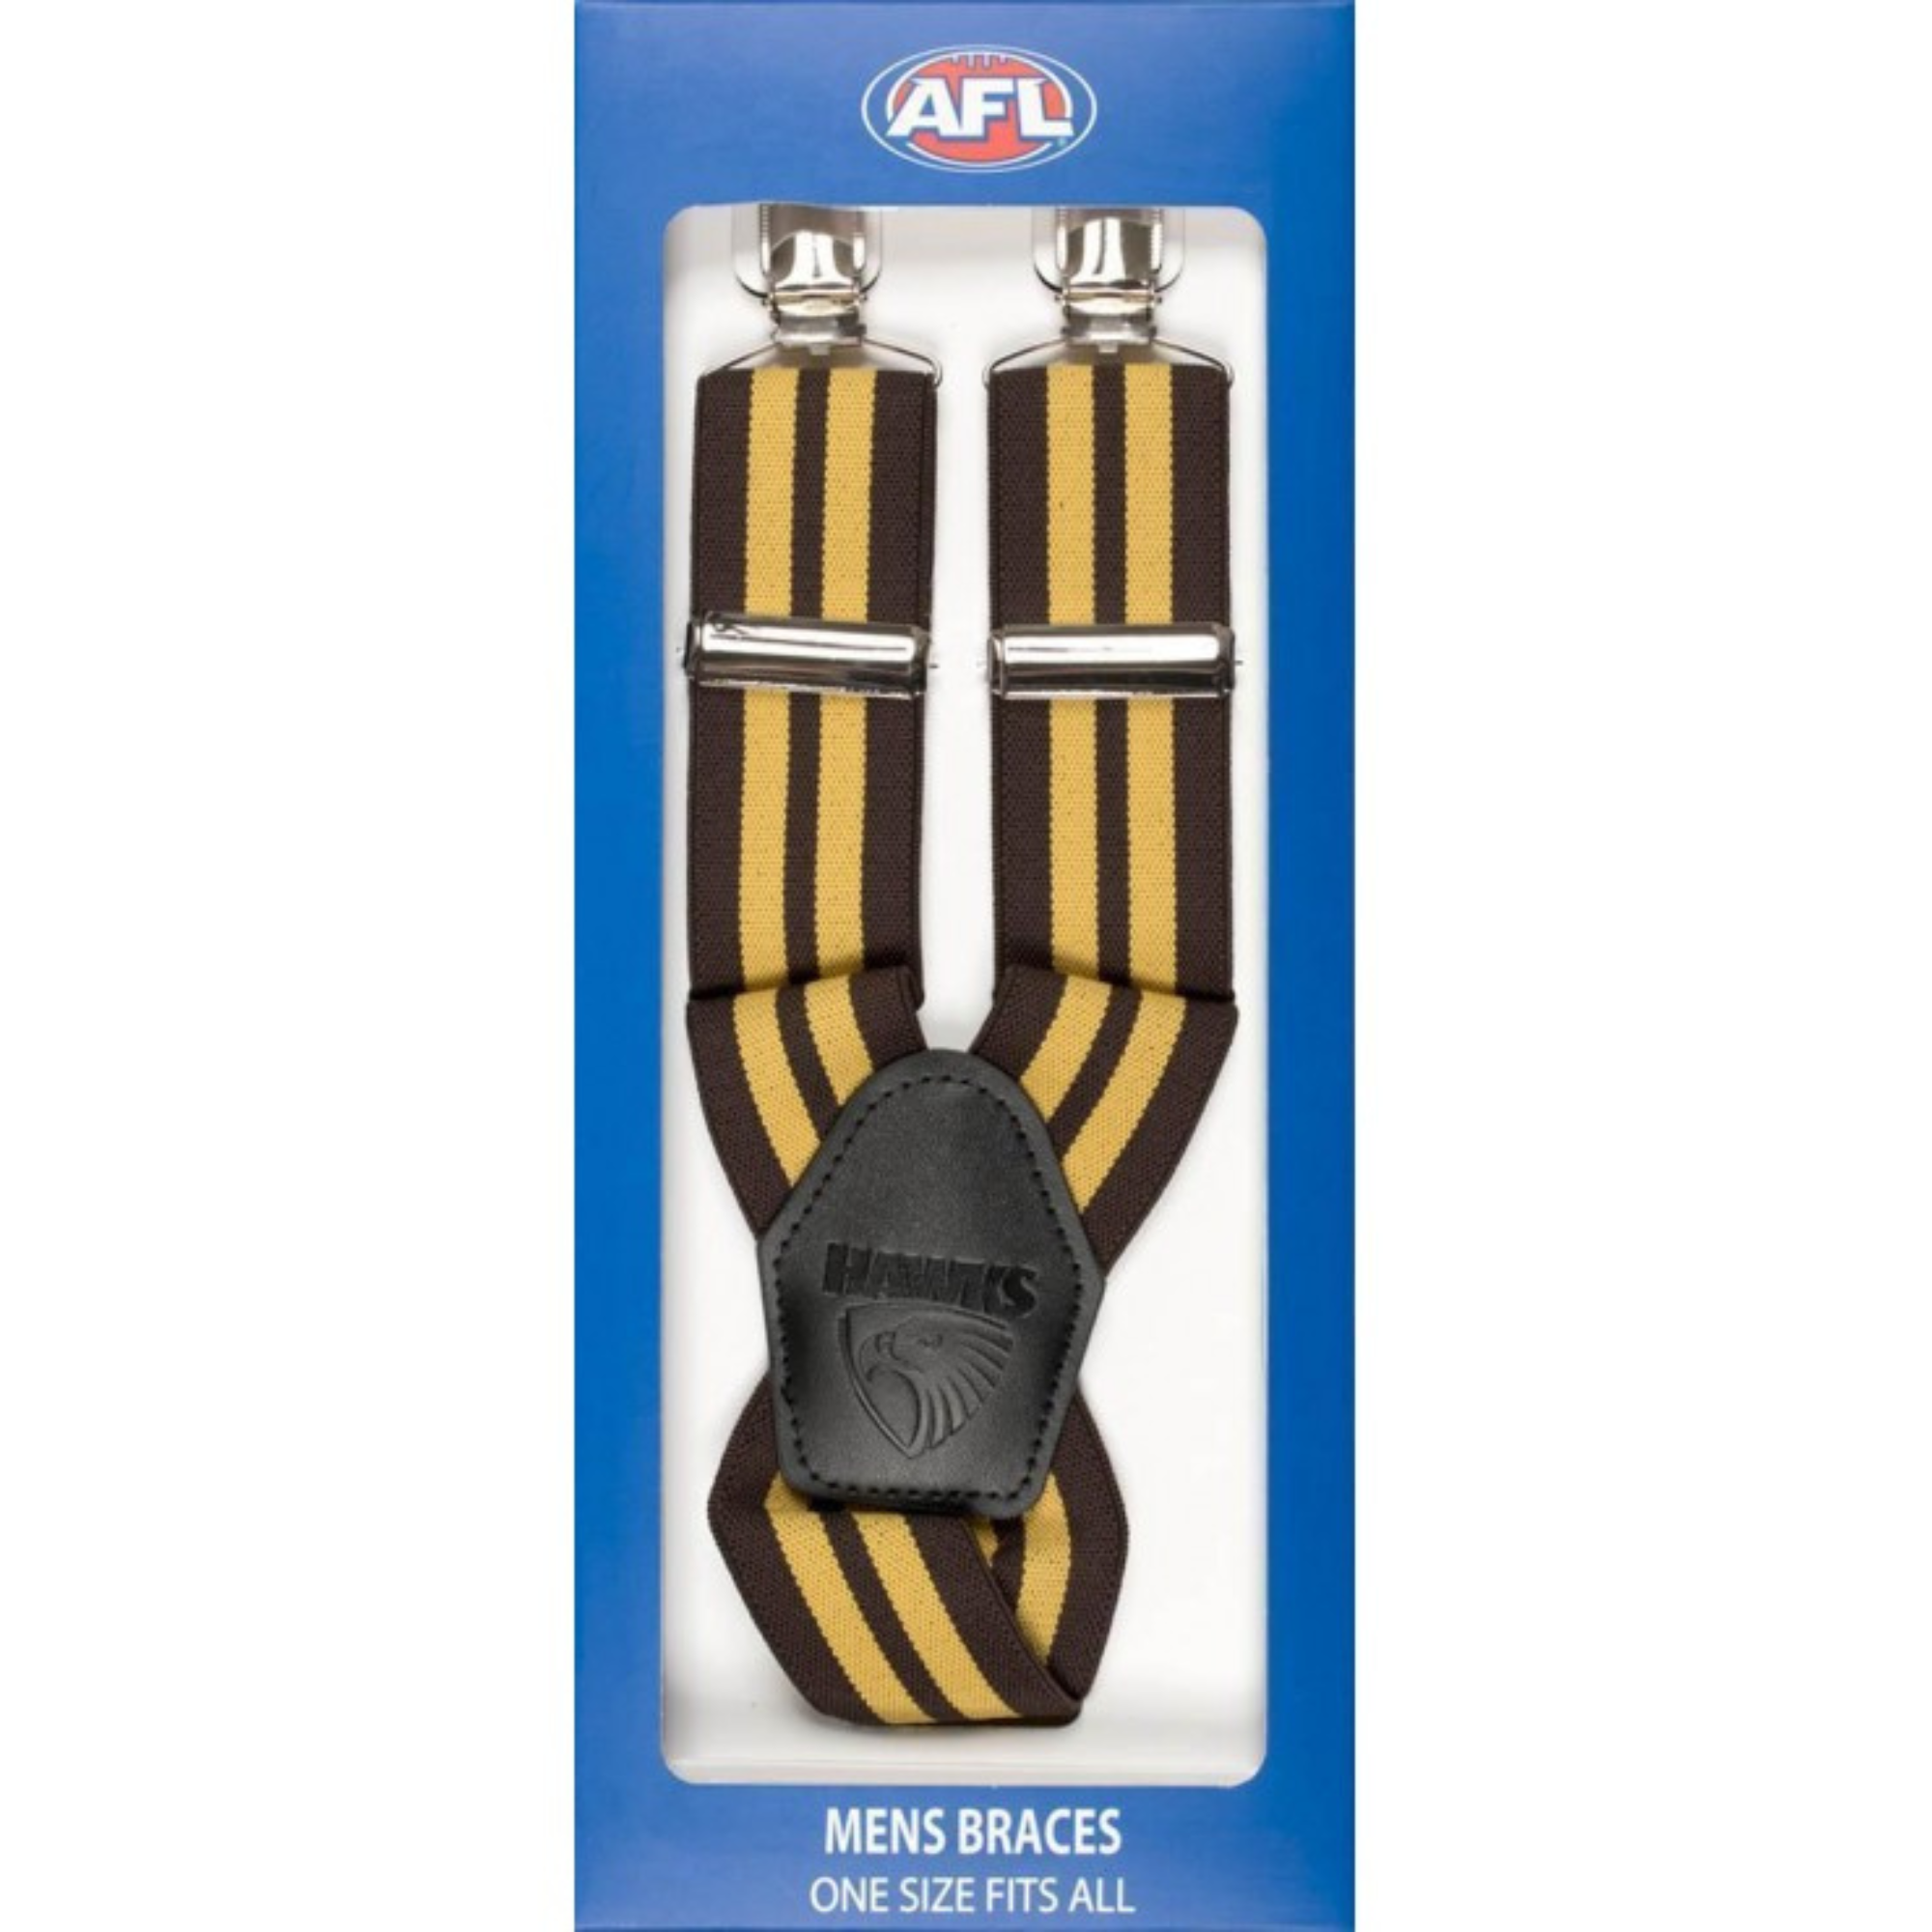 Hawthorn Trouser AFL Braces